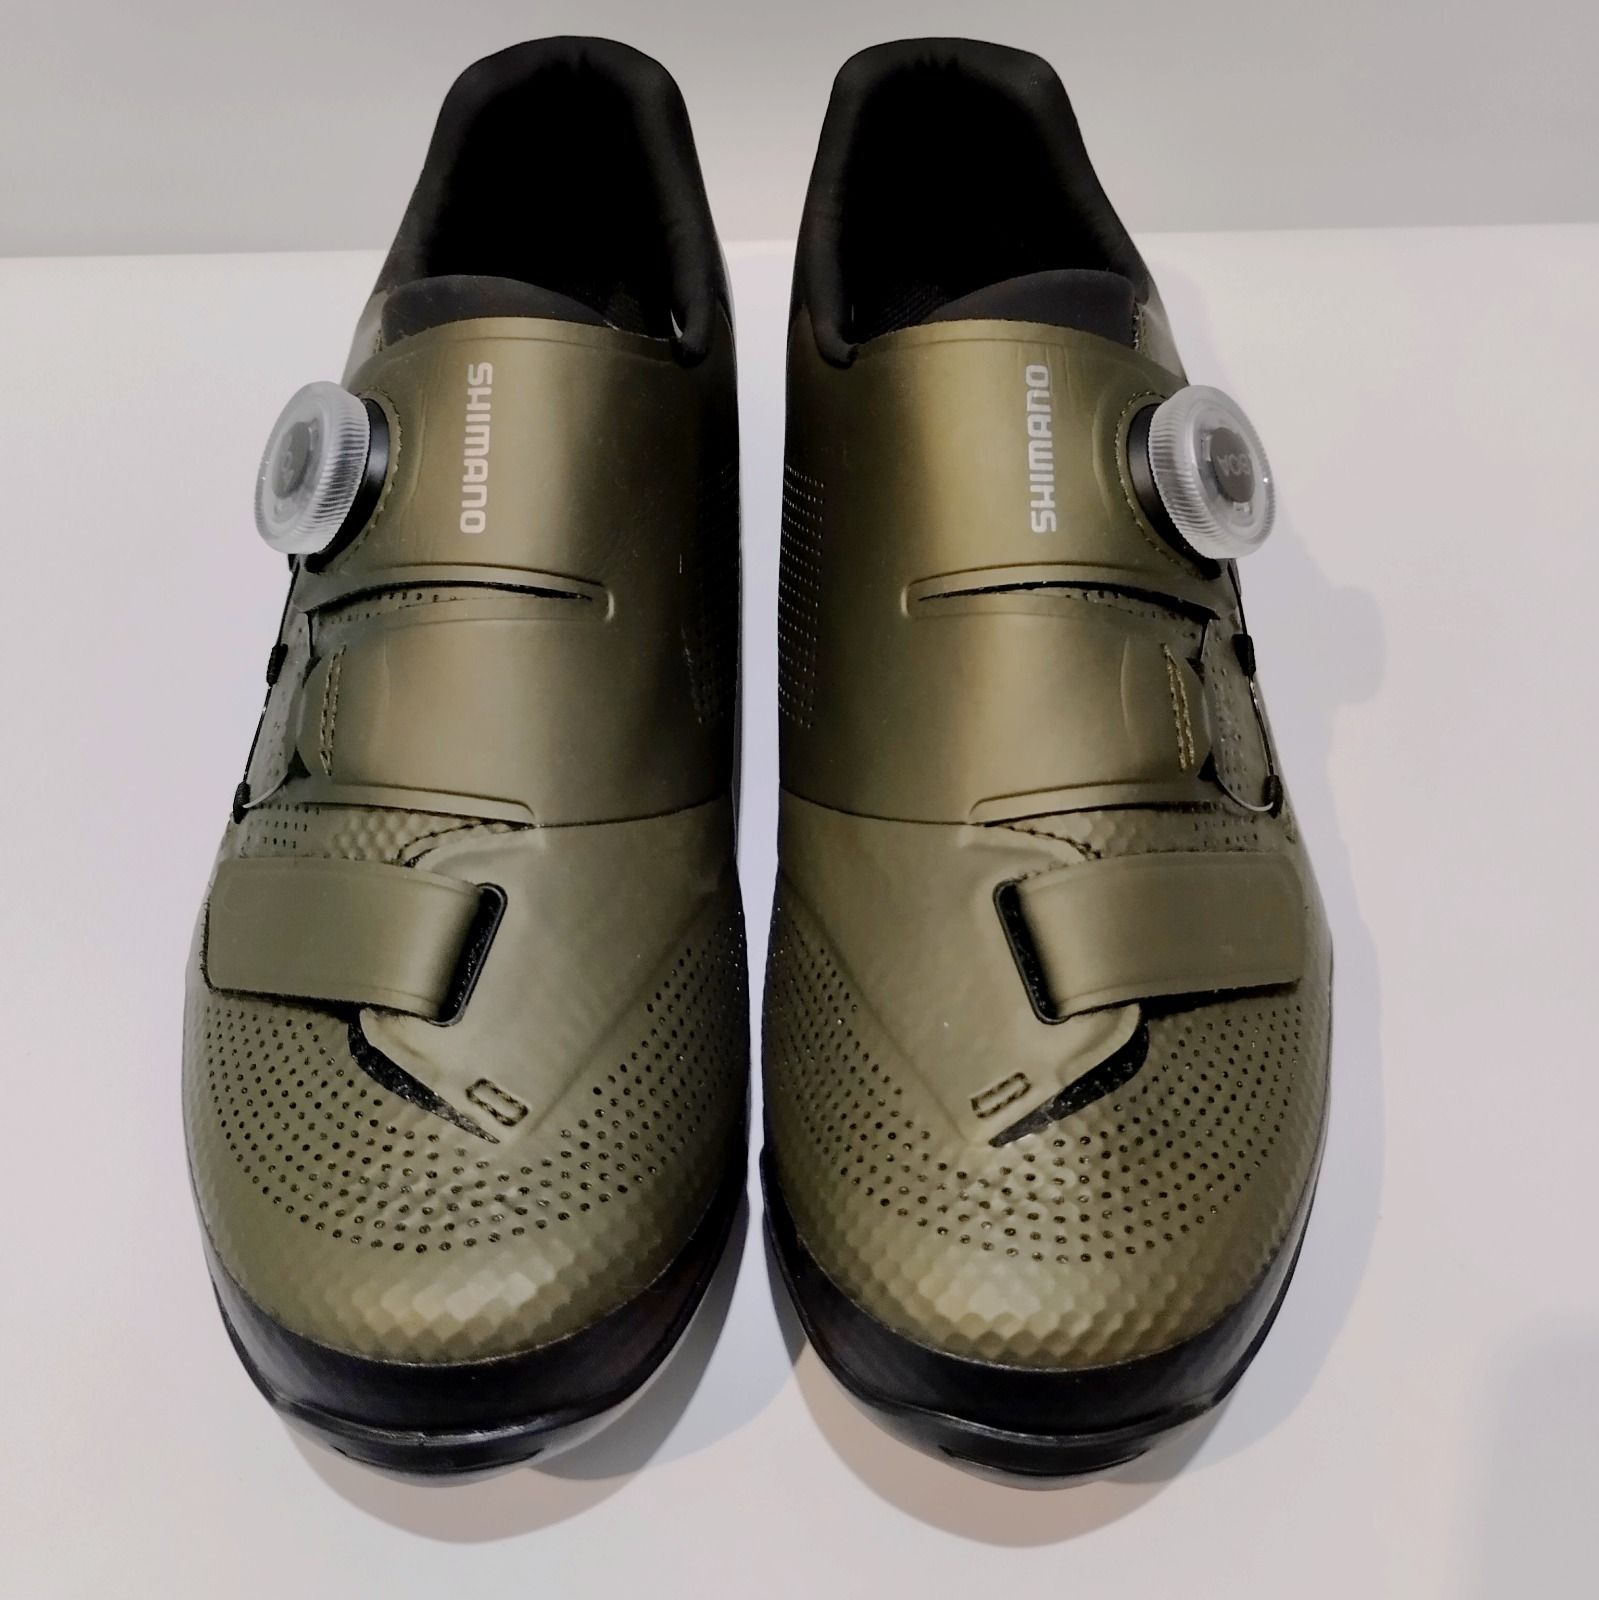 Новые МТБ туфли Shimano SH-XC502 (100$)